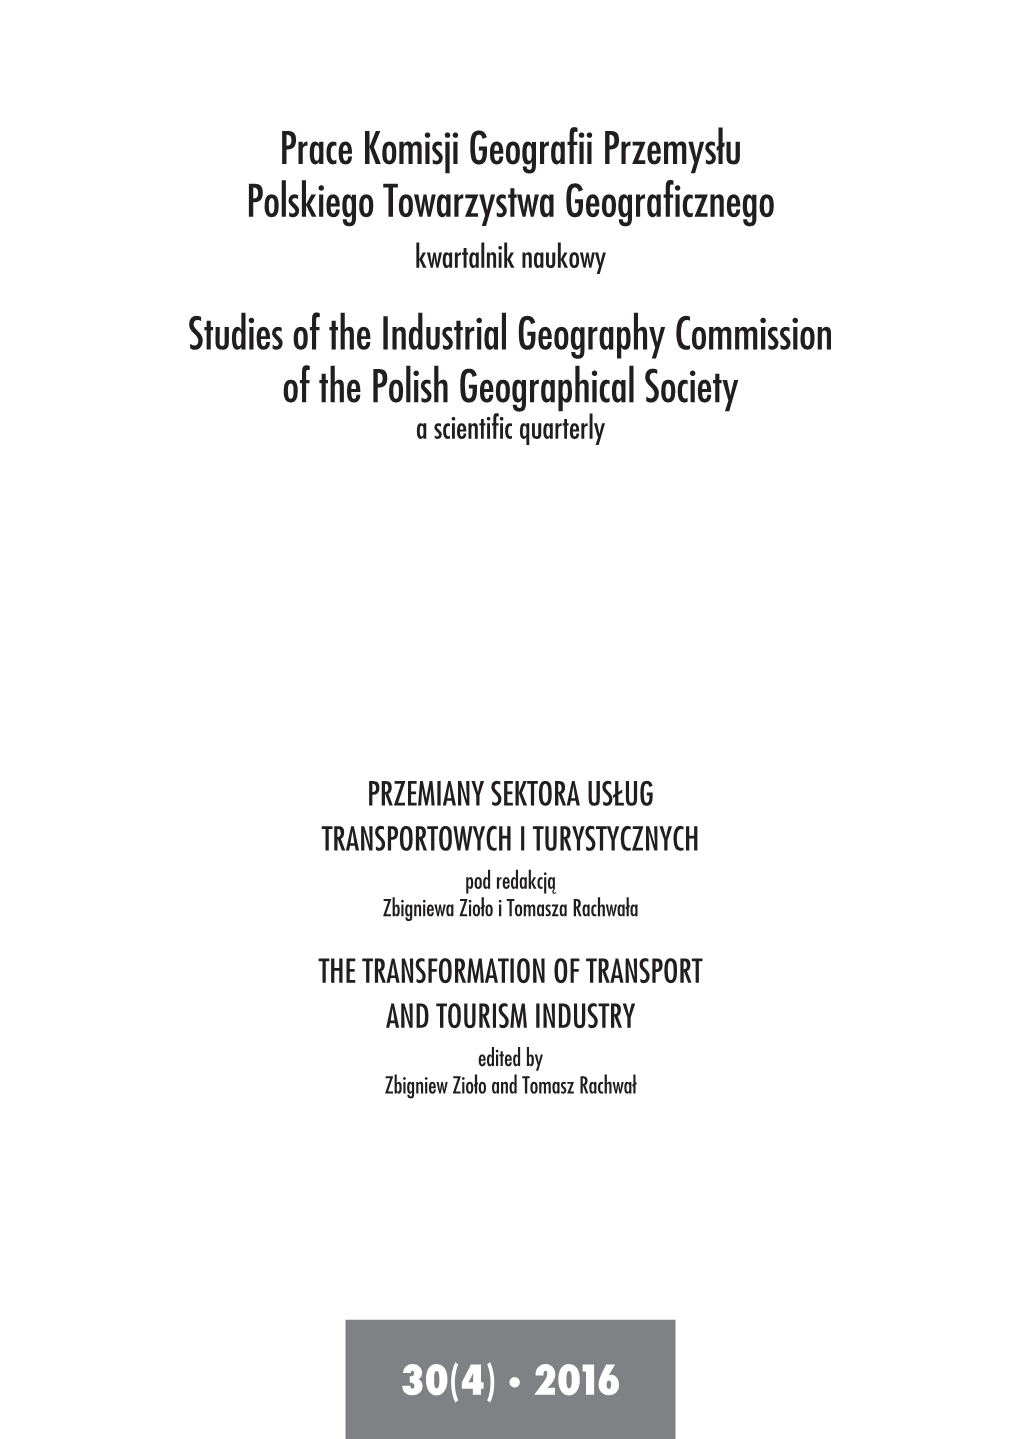 Prace Komisji Geografii Przemysłu Polskiego Towarzystwa Geograficznego Studies of the Industrial Geography Commission of the Polish Geographical Society